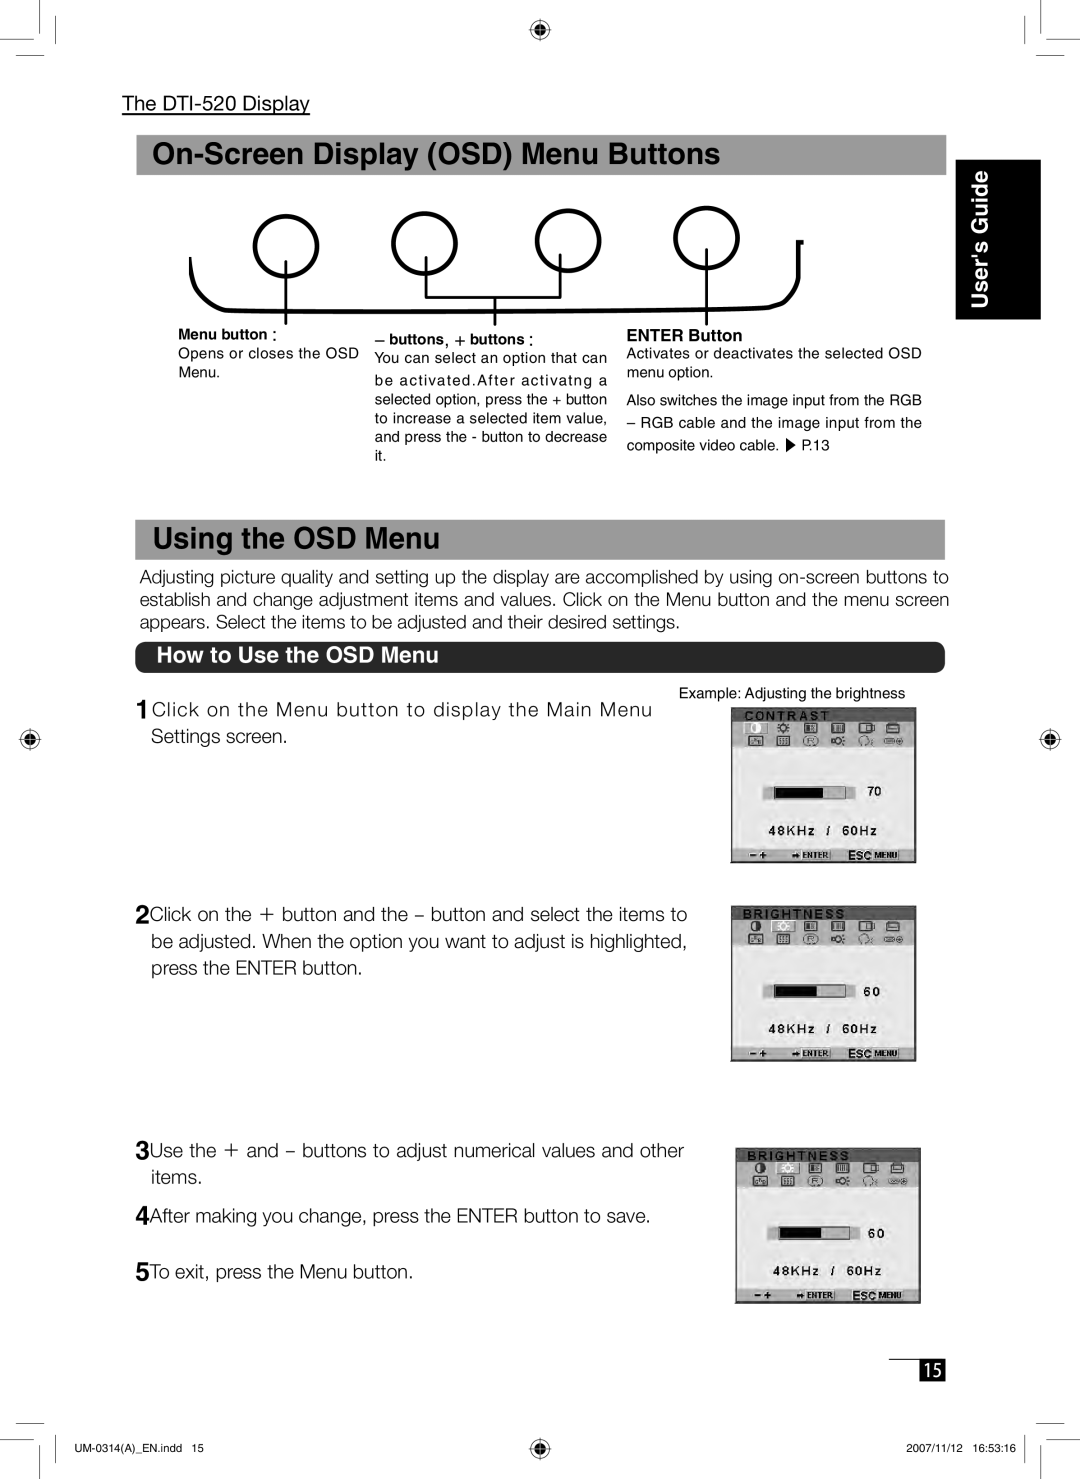 Wacom DTI-520 manual On-Screen Display OSD Menu Buttons, Using the OSD Menu, How to Use the OSD Menu, Users Guide 